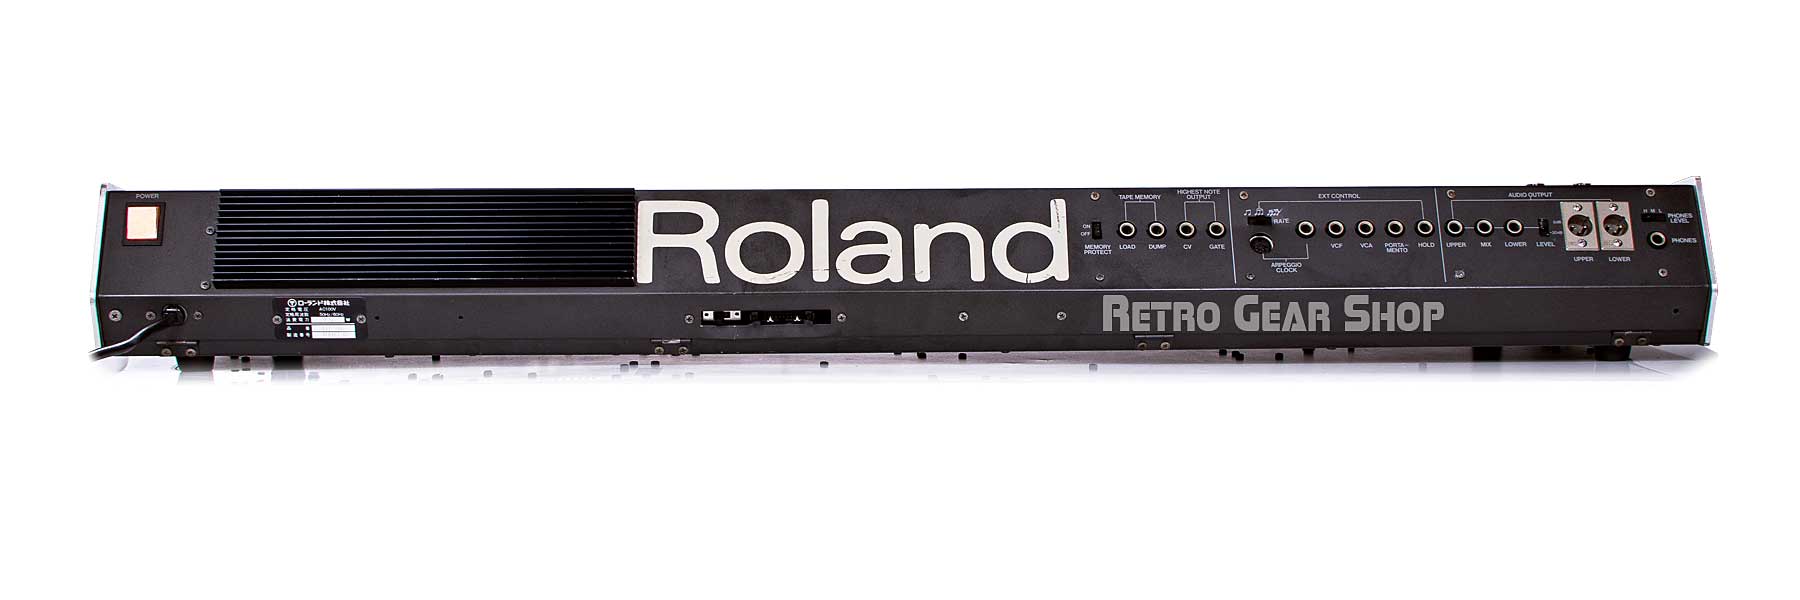 Roland Jupiter 8 Rear